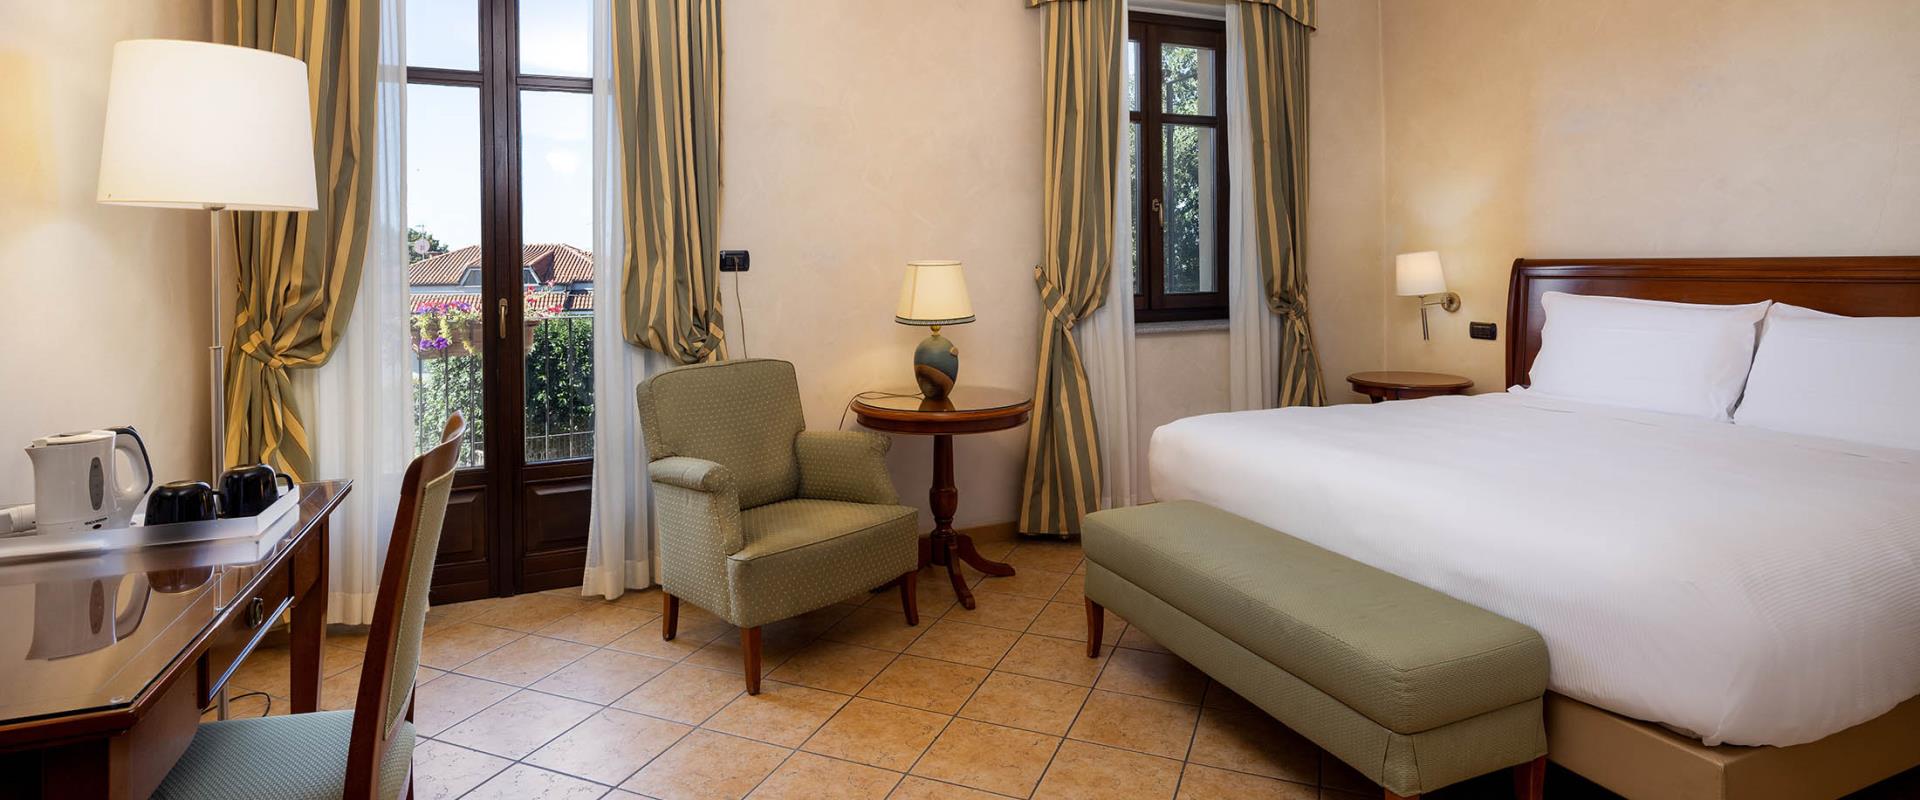 Cerchi un hotel per il tuo soggiorno vicino all aeroporto di Torino Caselle? Prenota al Best Western Plus Hotel Le Rondini. Un connubio di antico, modernità e relax!